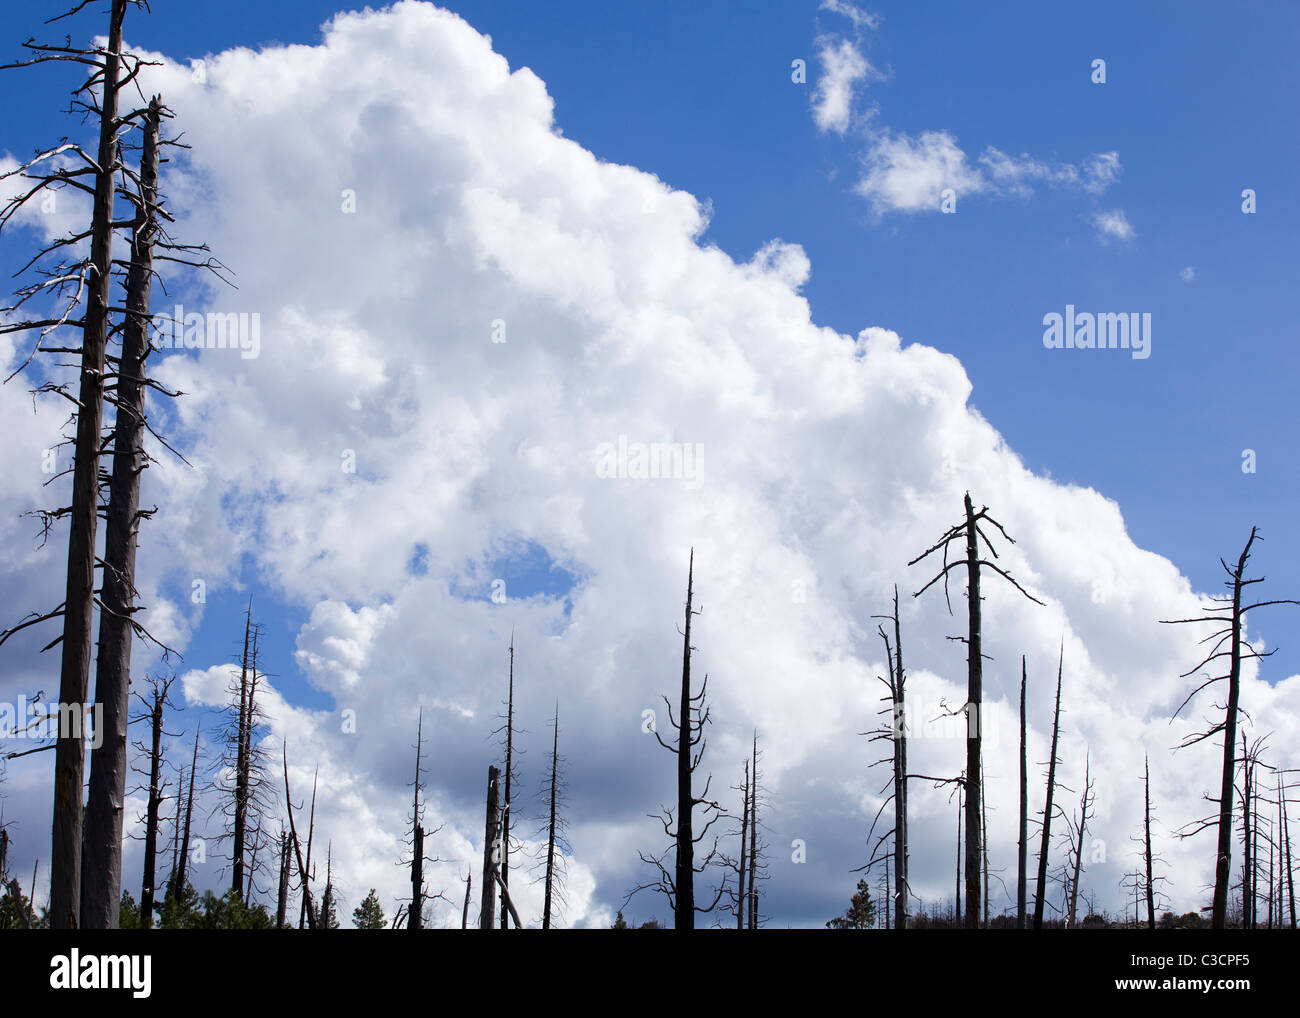 Árboles quemados en incendios forestales, contra el azul cielo nublado - Sierra Nevada, California, EE.UU. Foto de stock